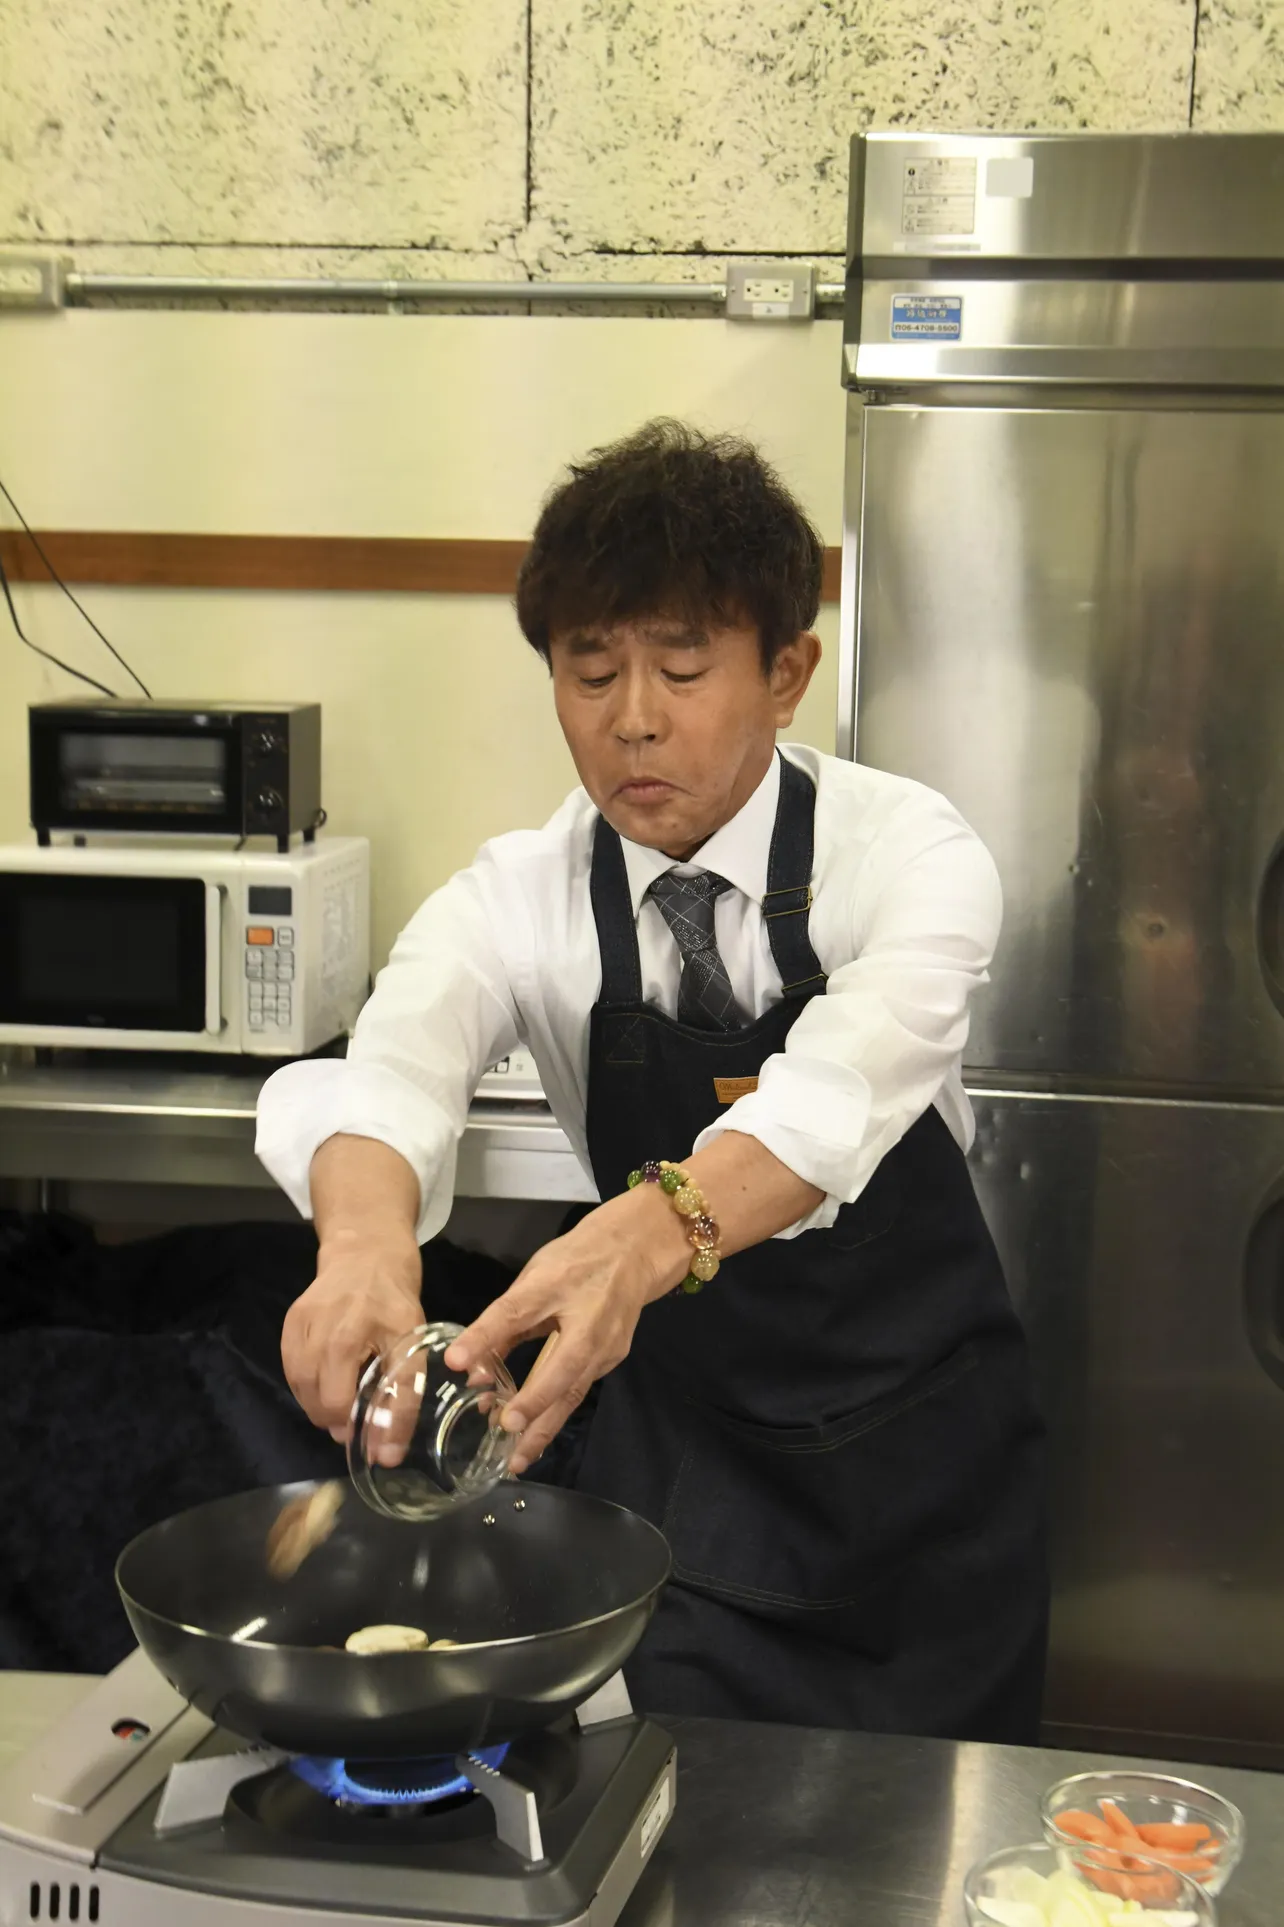 「芸能人格付けチェックBASIC 春の３時間スペシャル」では浜田雅功が料理する